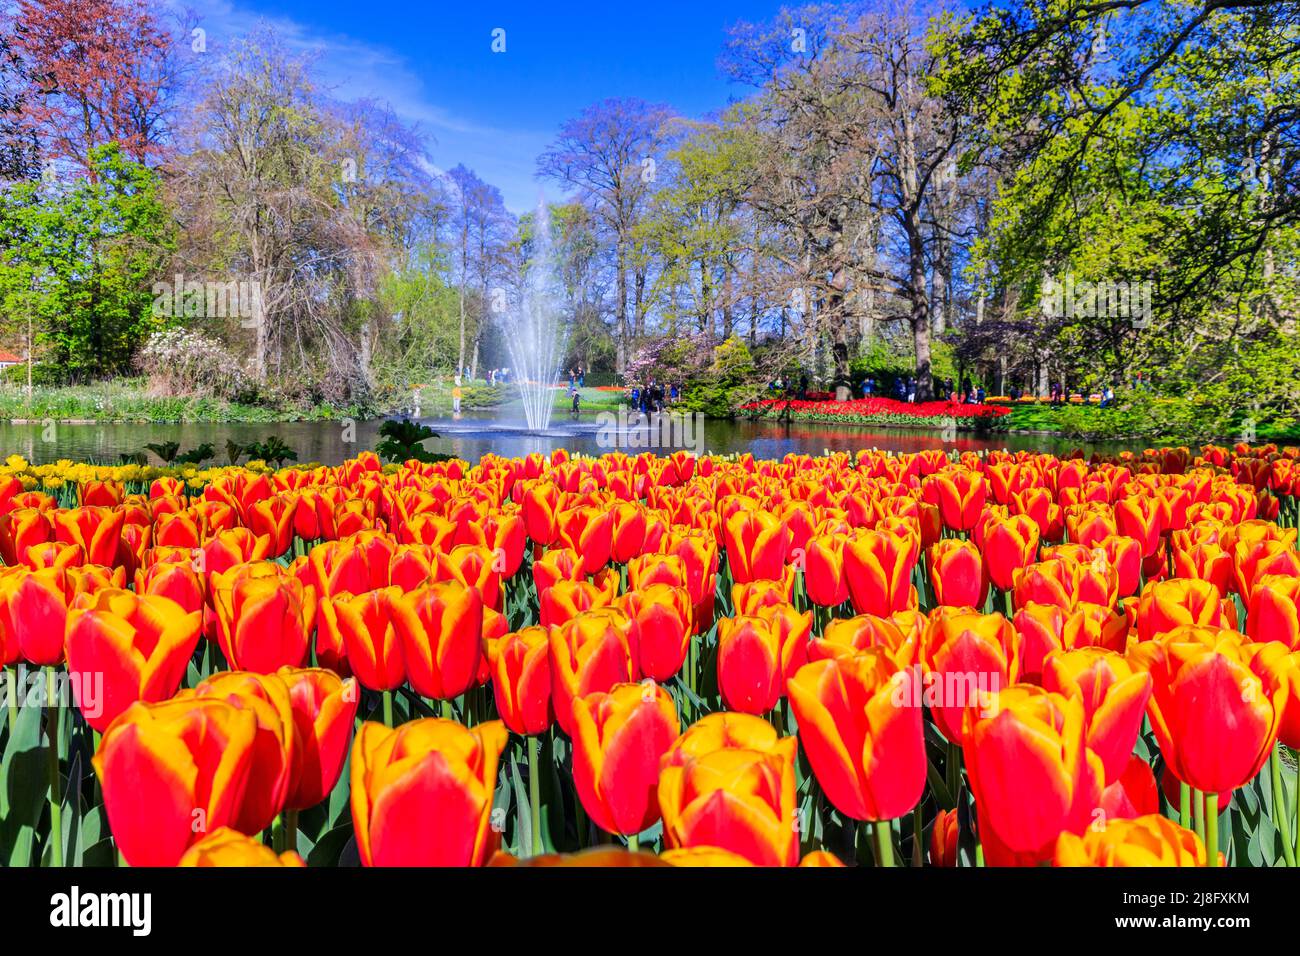 Fleurs de tulipes colorées fleuries dans le jardin public de Keukenhof avec fontaine d'eau. Lisse, Hollande, pays-Bas. Banque D'Images